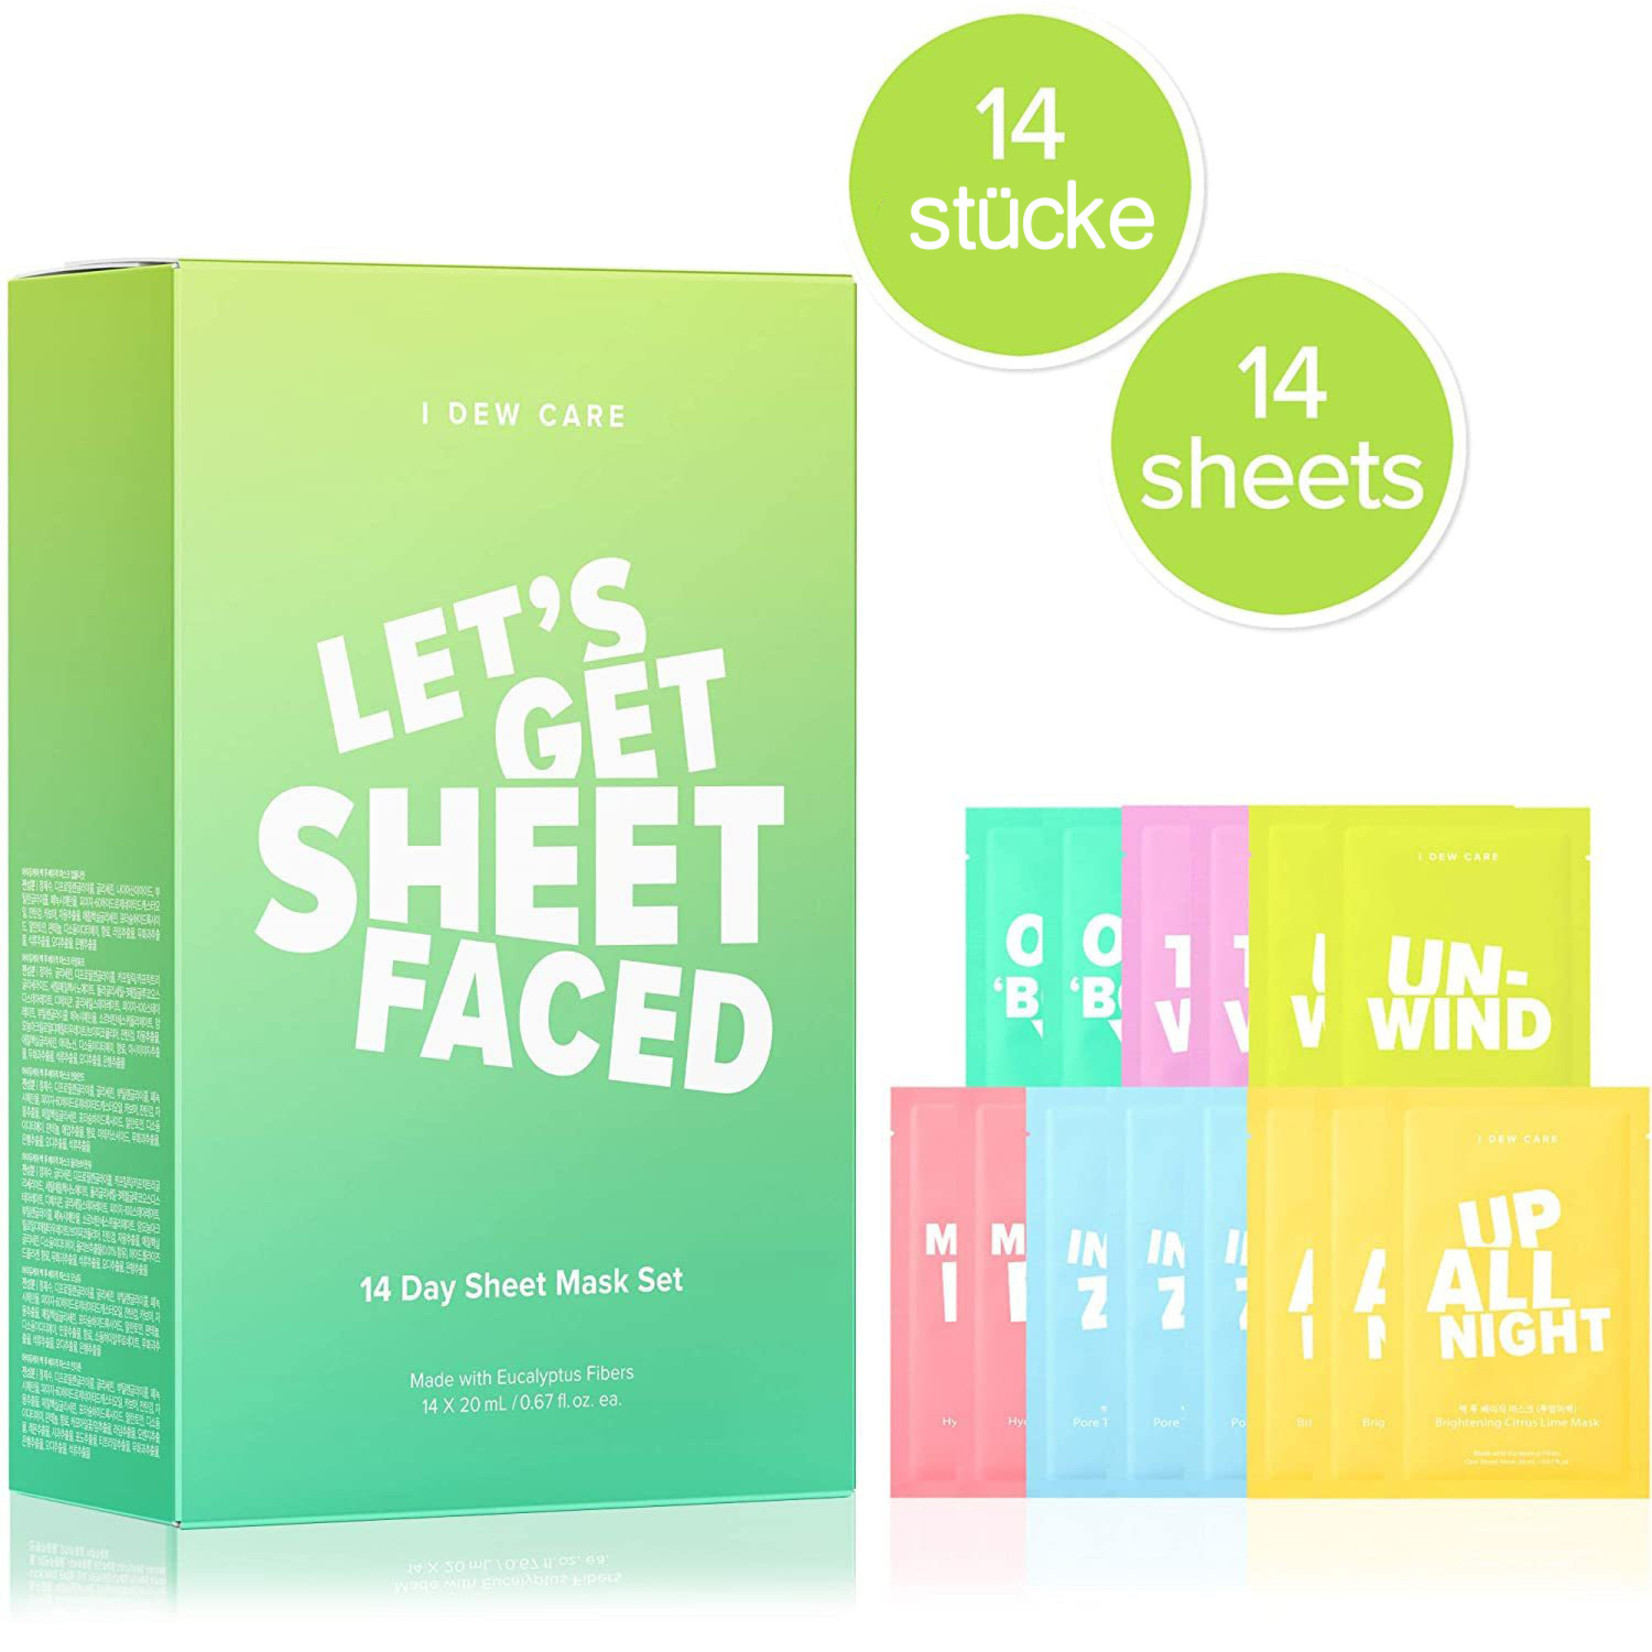 "Let's Get Sheet Faced" Sheet Mask Set (14 pcs)